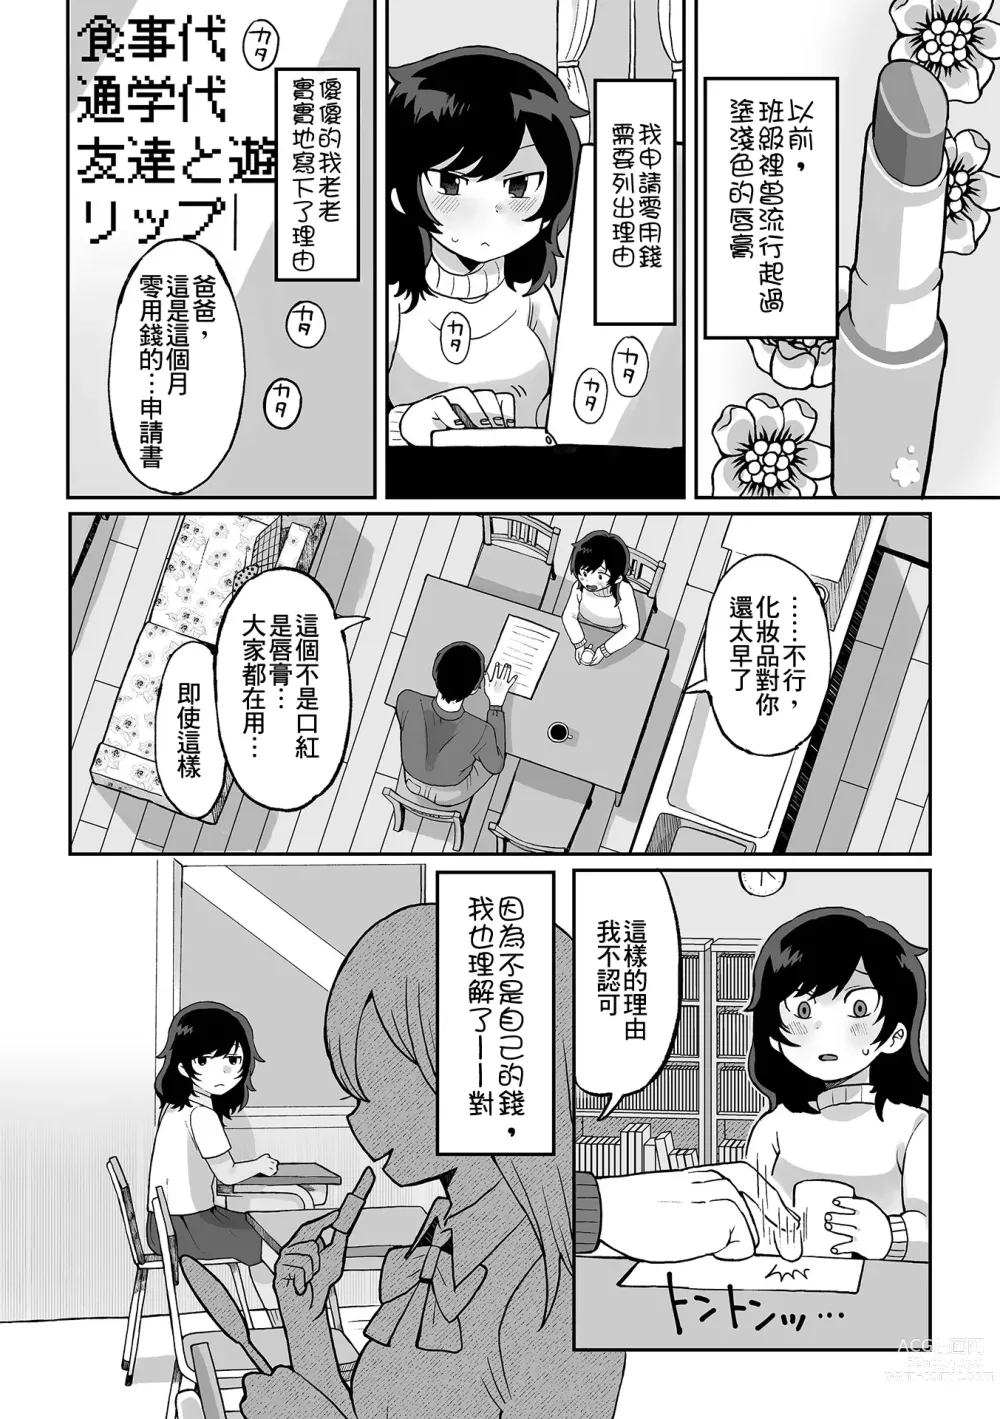 Page 3 of manga Nee Papa onegai